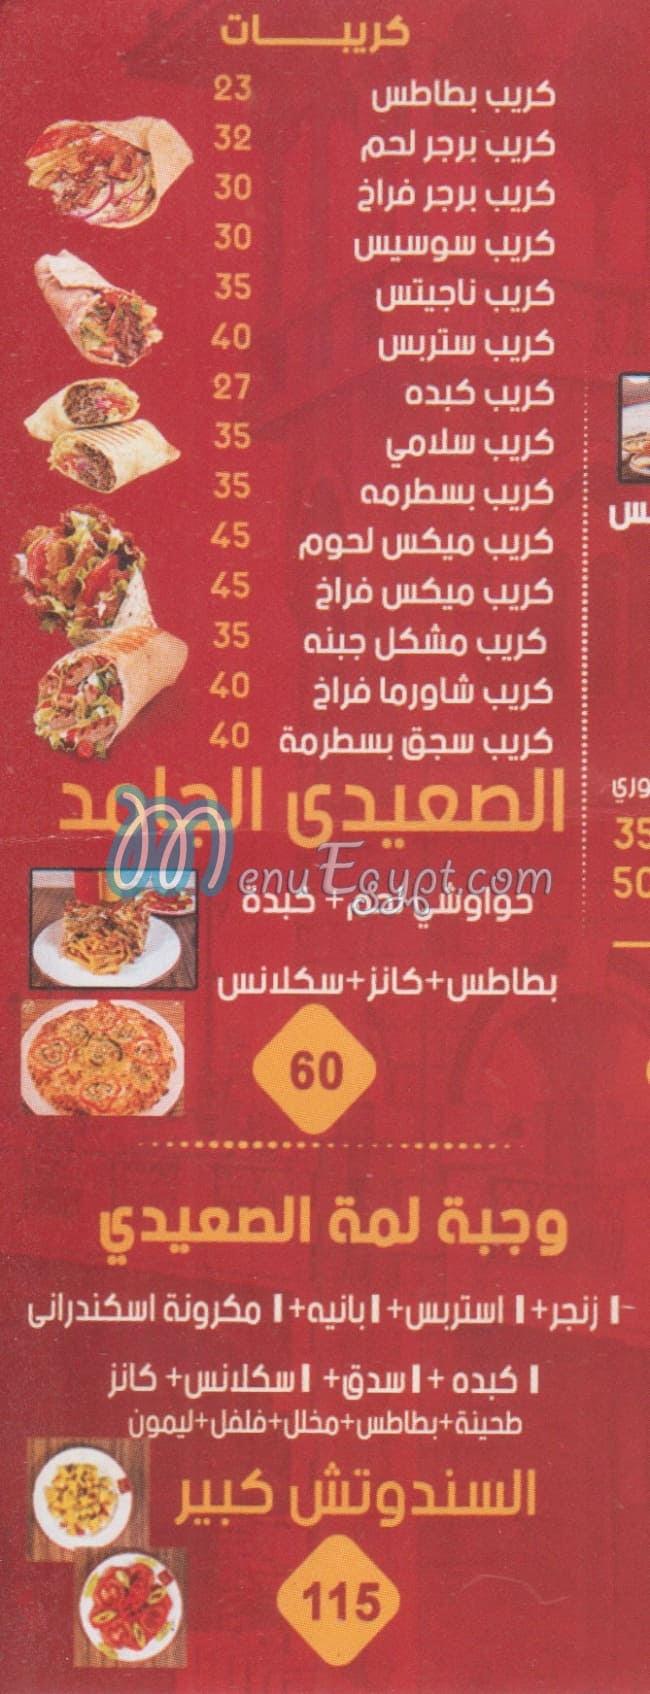 ELFLAAH menu Egypt